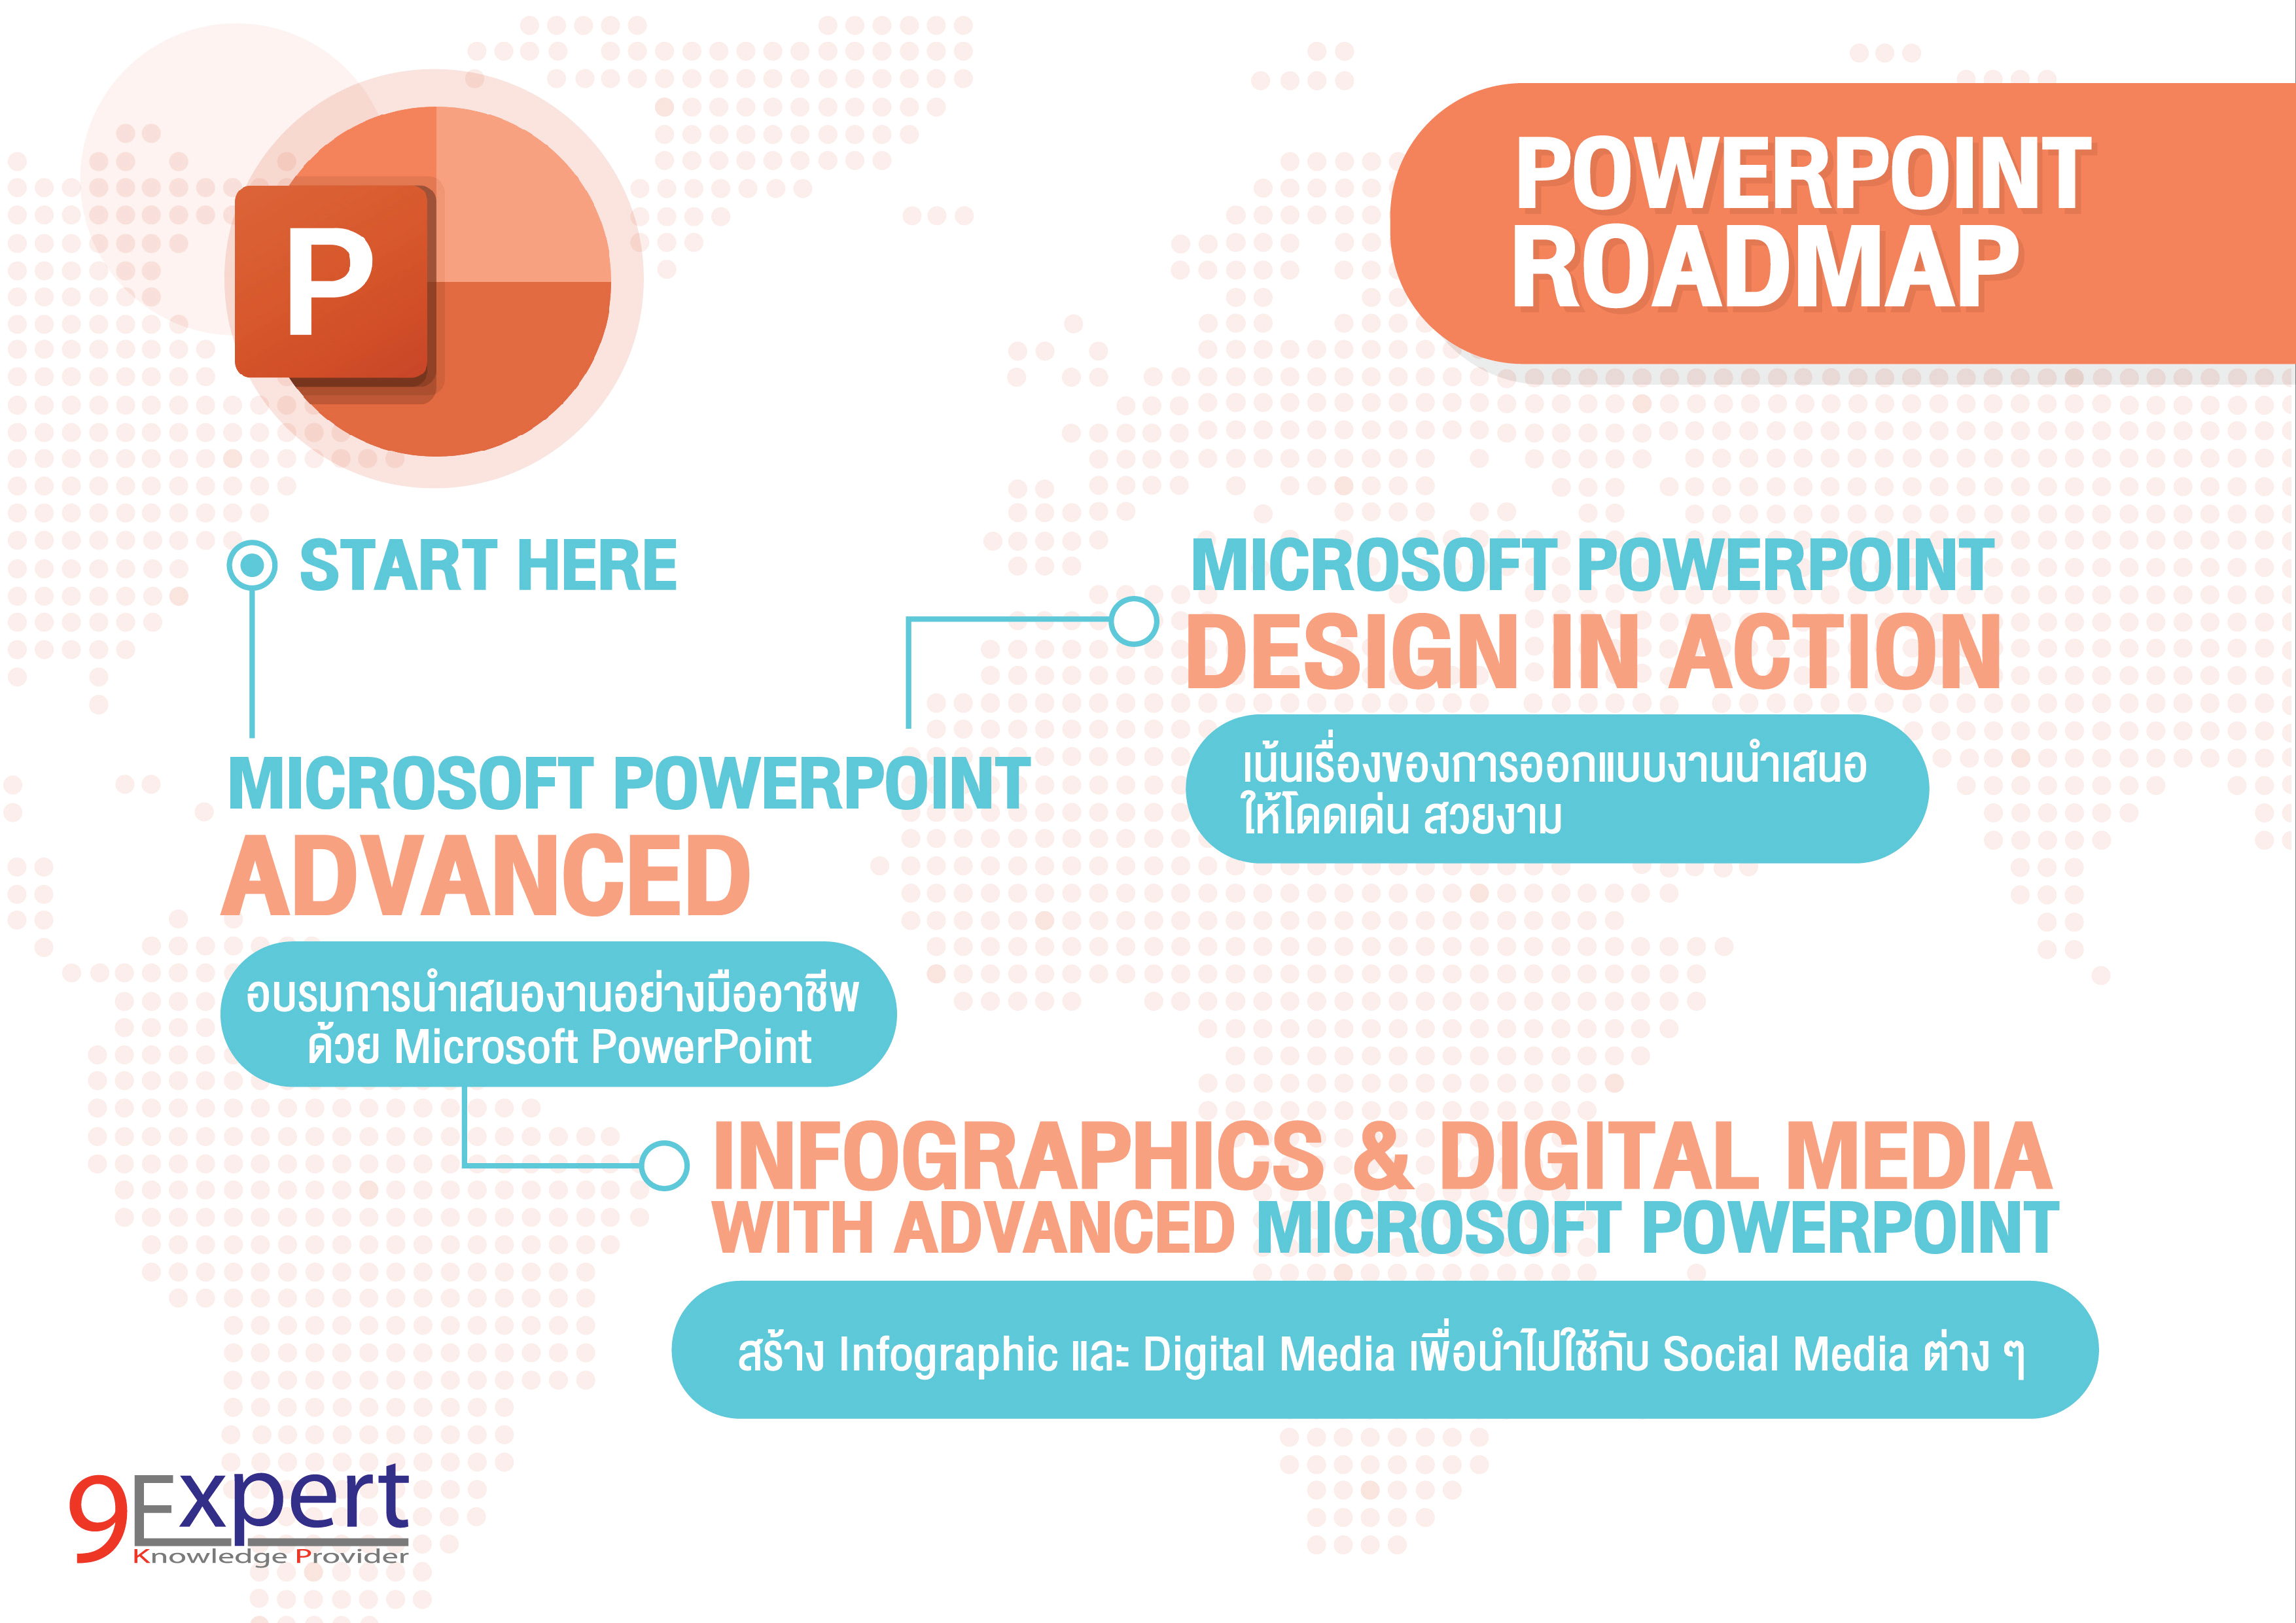 PowerPoint Roadmap